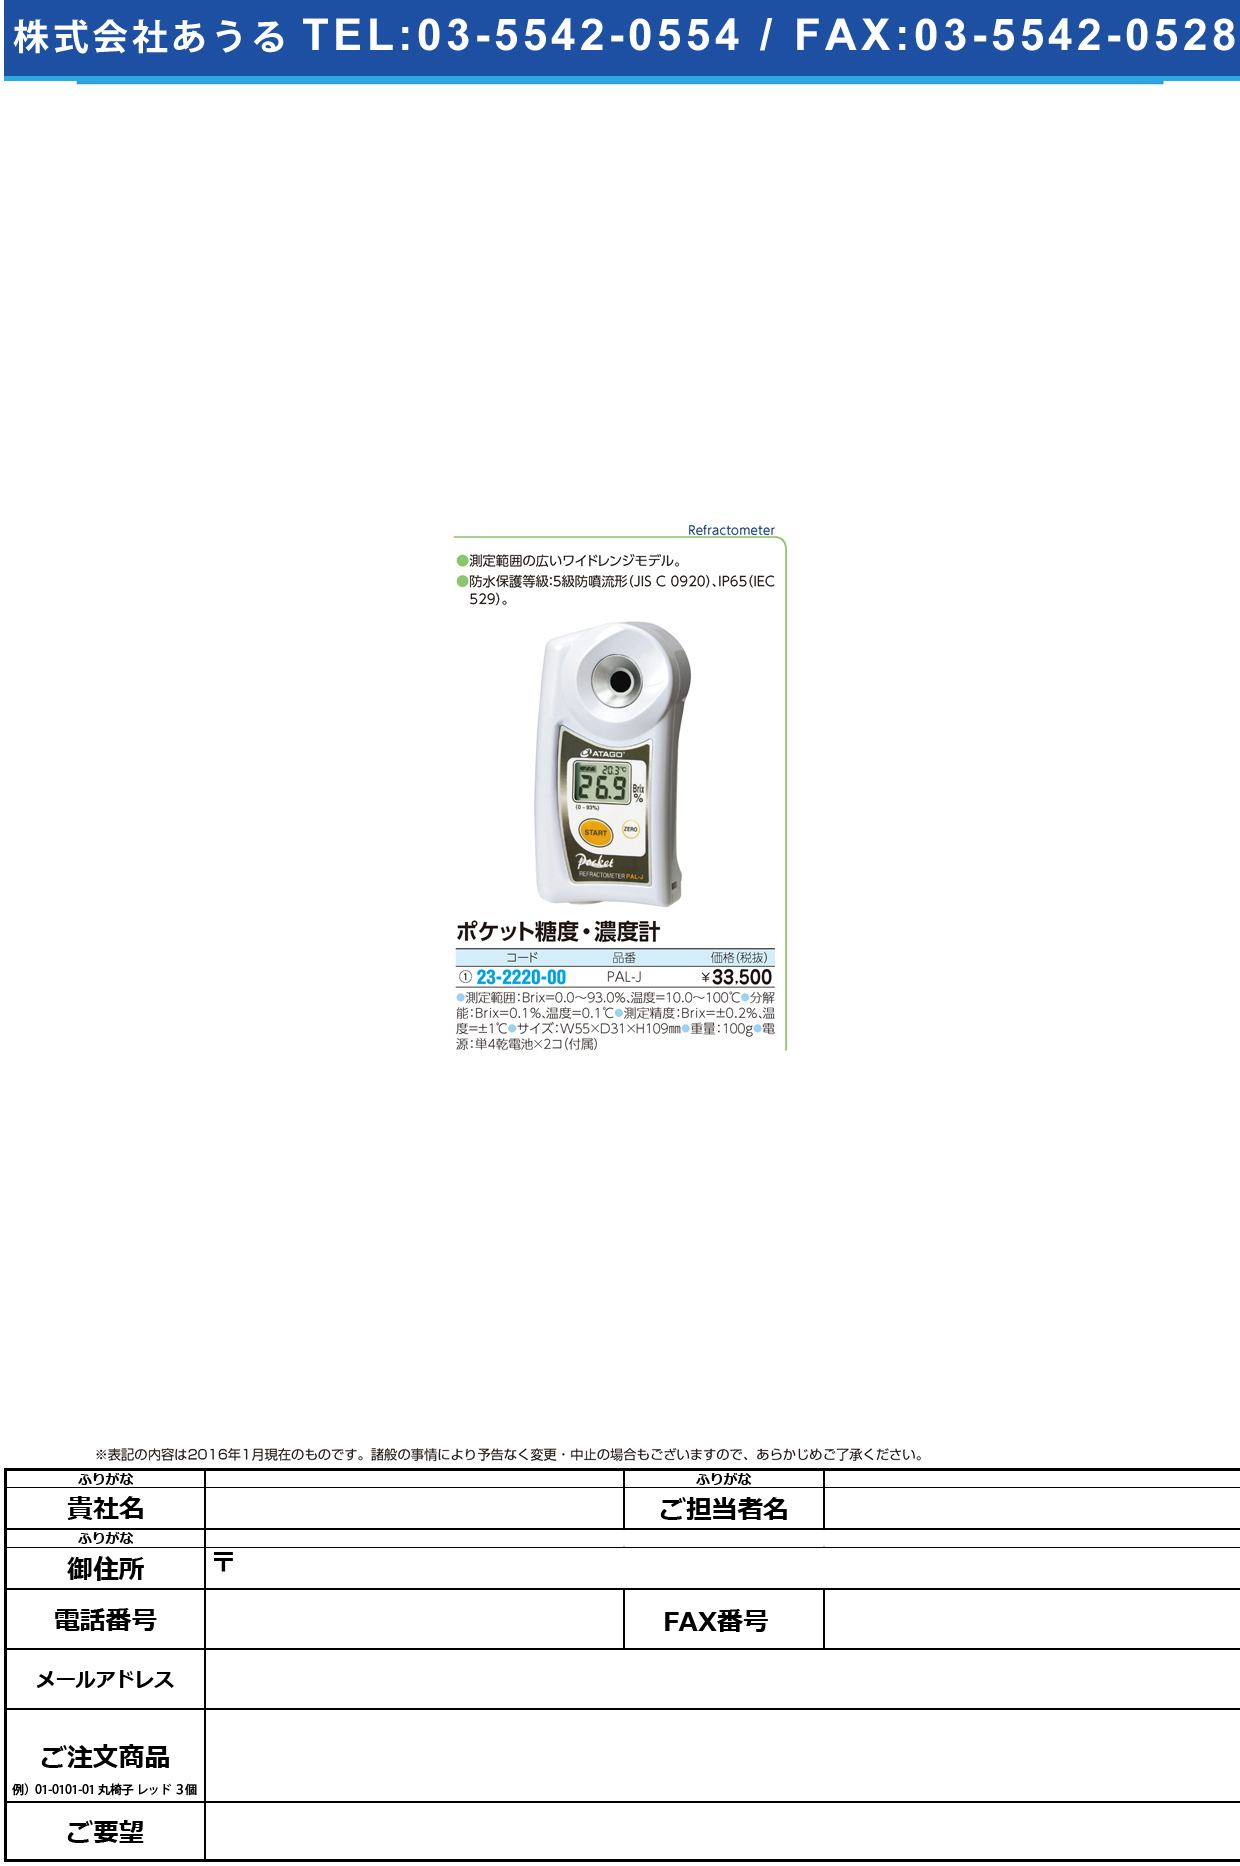 (23-2220-00)ポケット糖度計 ﾎﾟｹｯﾄﾄｳﾄﾞｹｲ PAL-J【1台単位】【2016年カタログ商品】